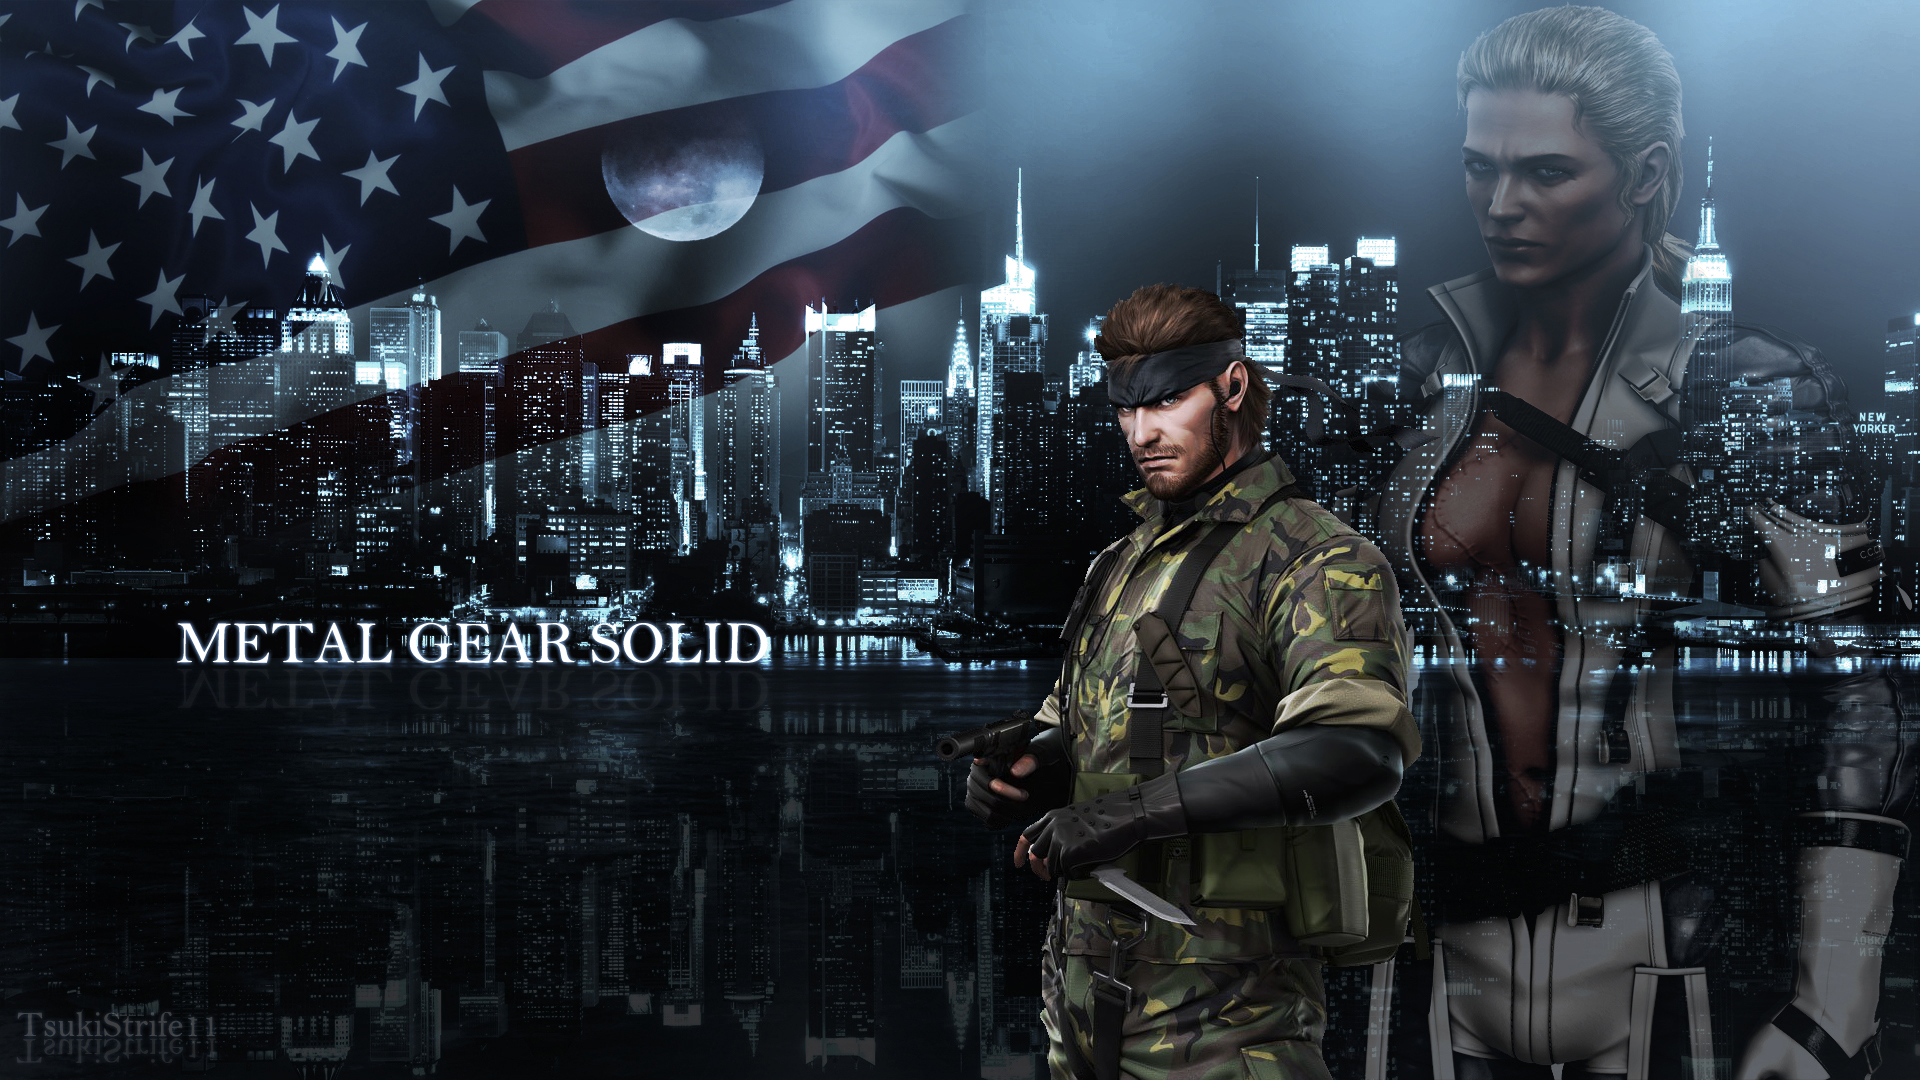 Metal Gear Solid HD Wallpaper | 1920x1080 | ID:58411